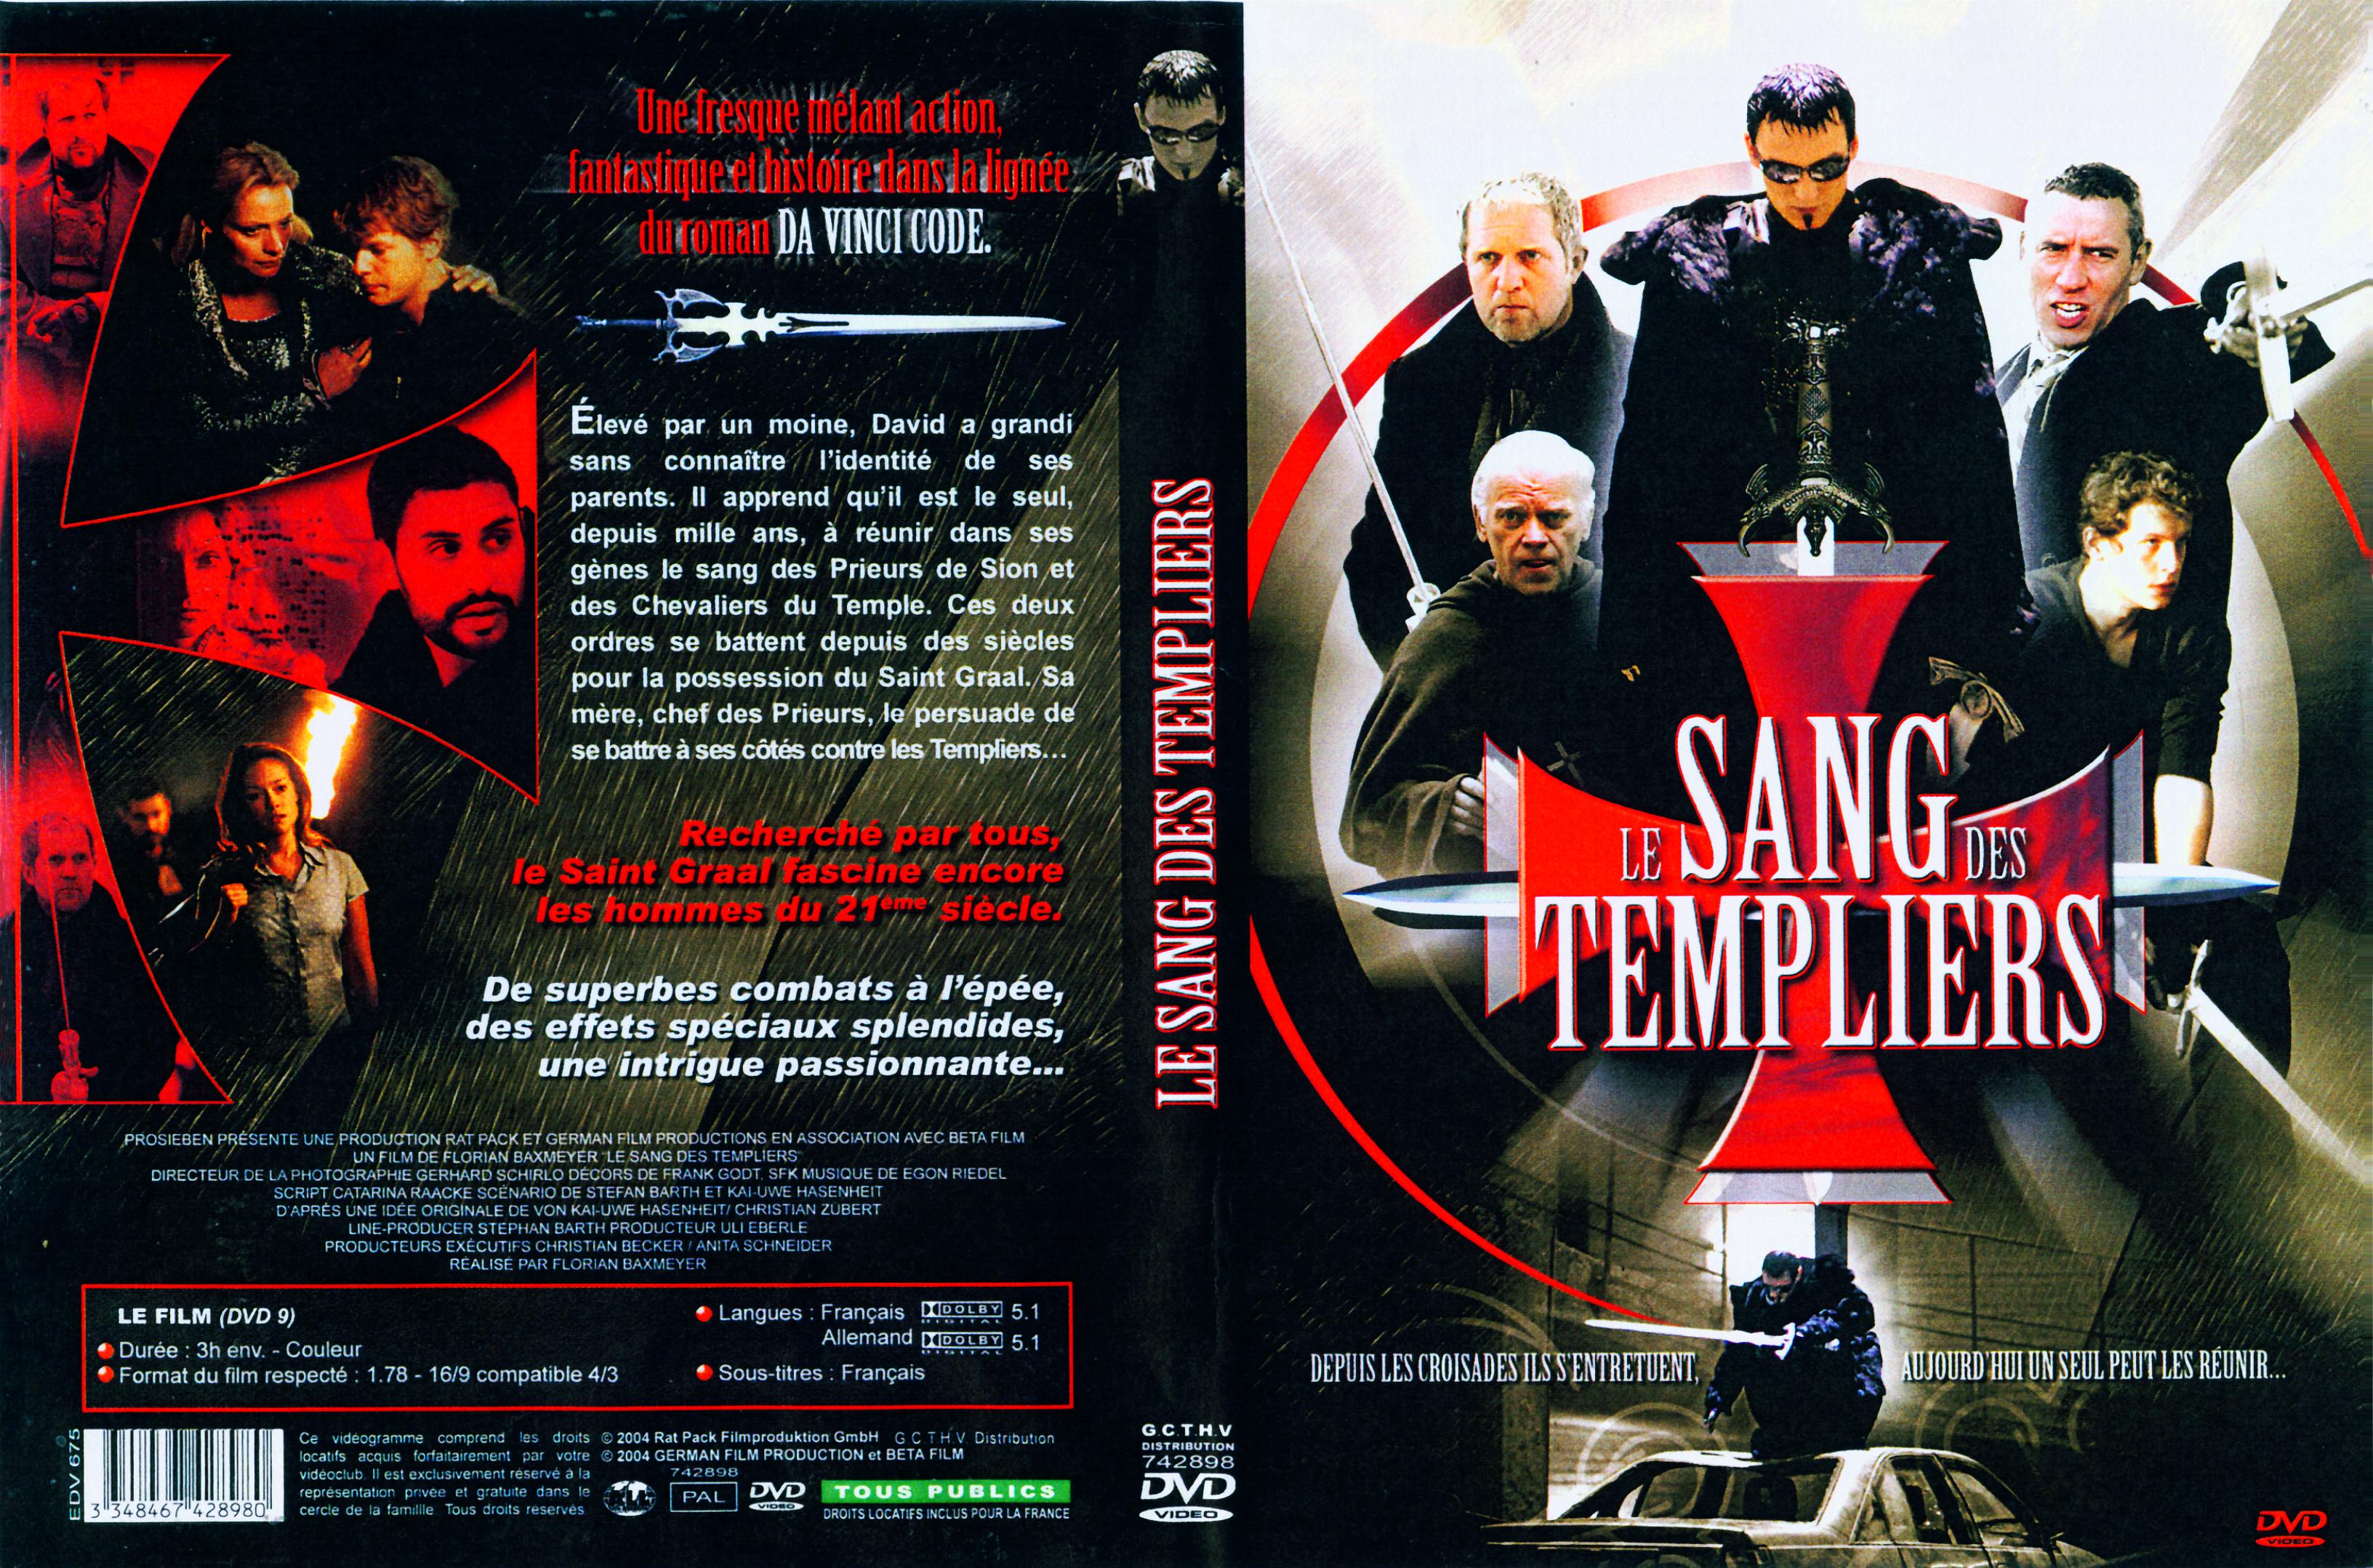 Jaquette DVD Le sang des Templiers v2